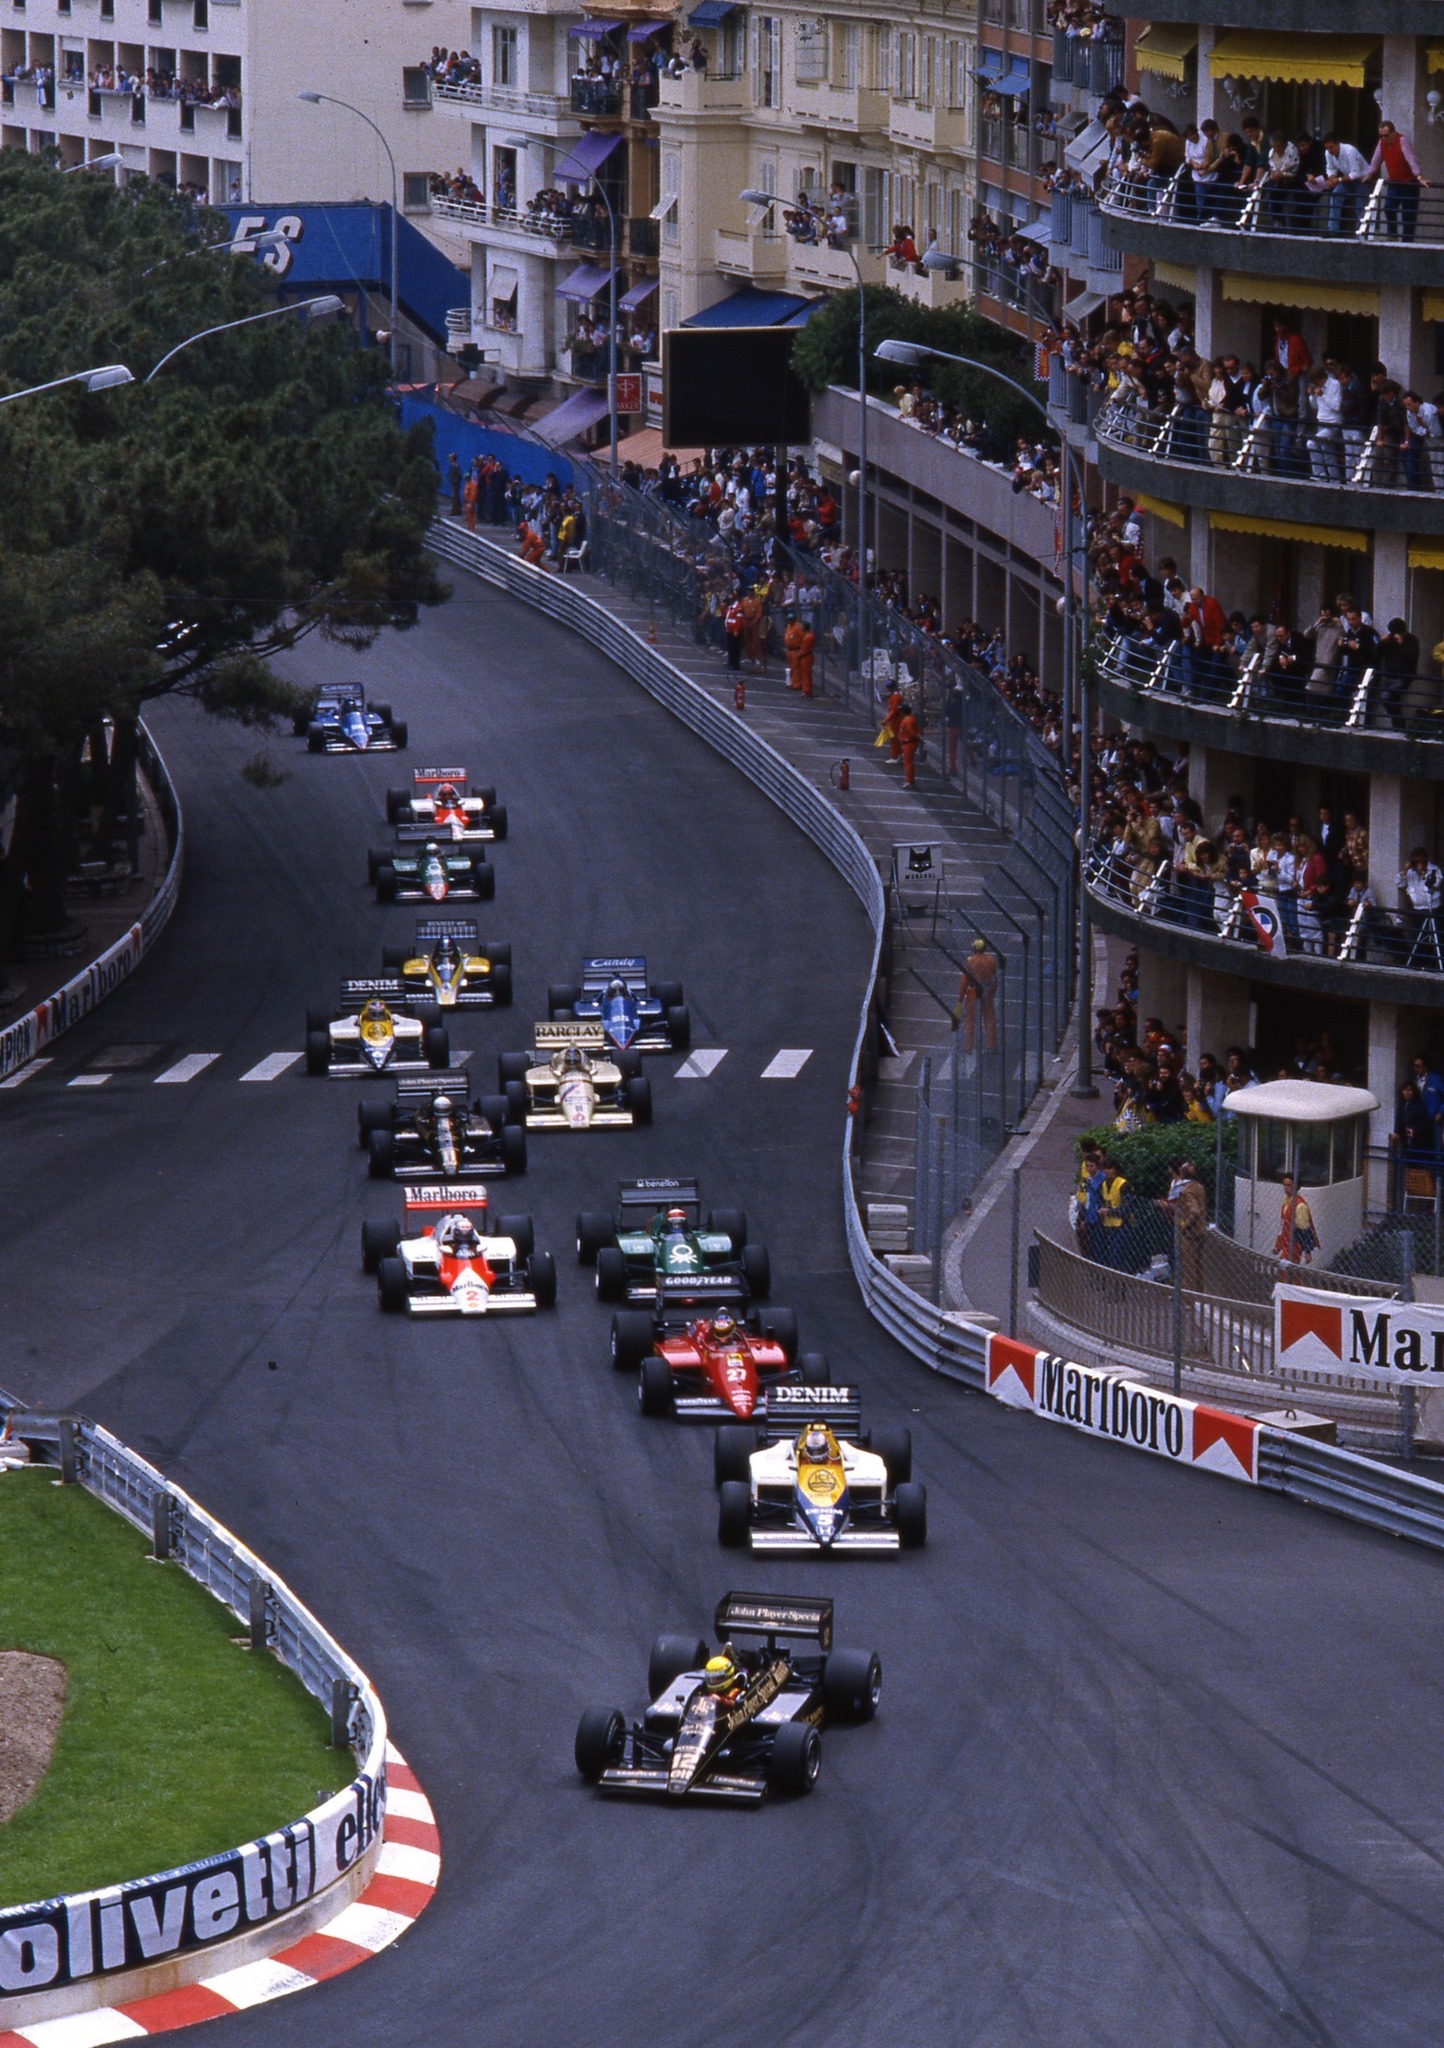 The Monaco Grand Prix in Monte Carlo on 19 May 1985.